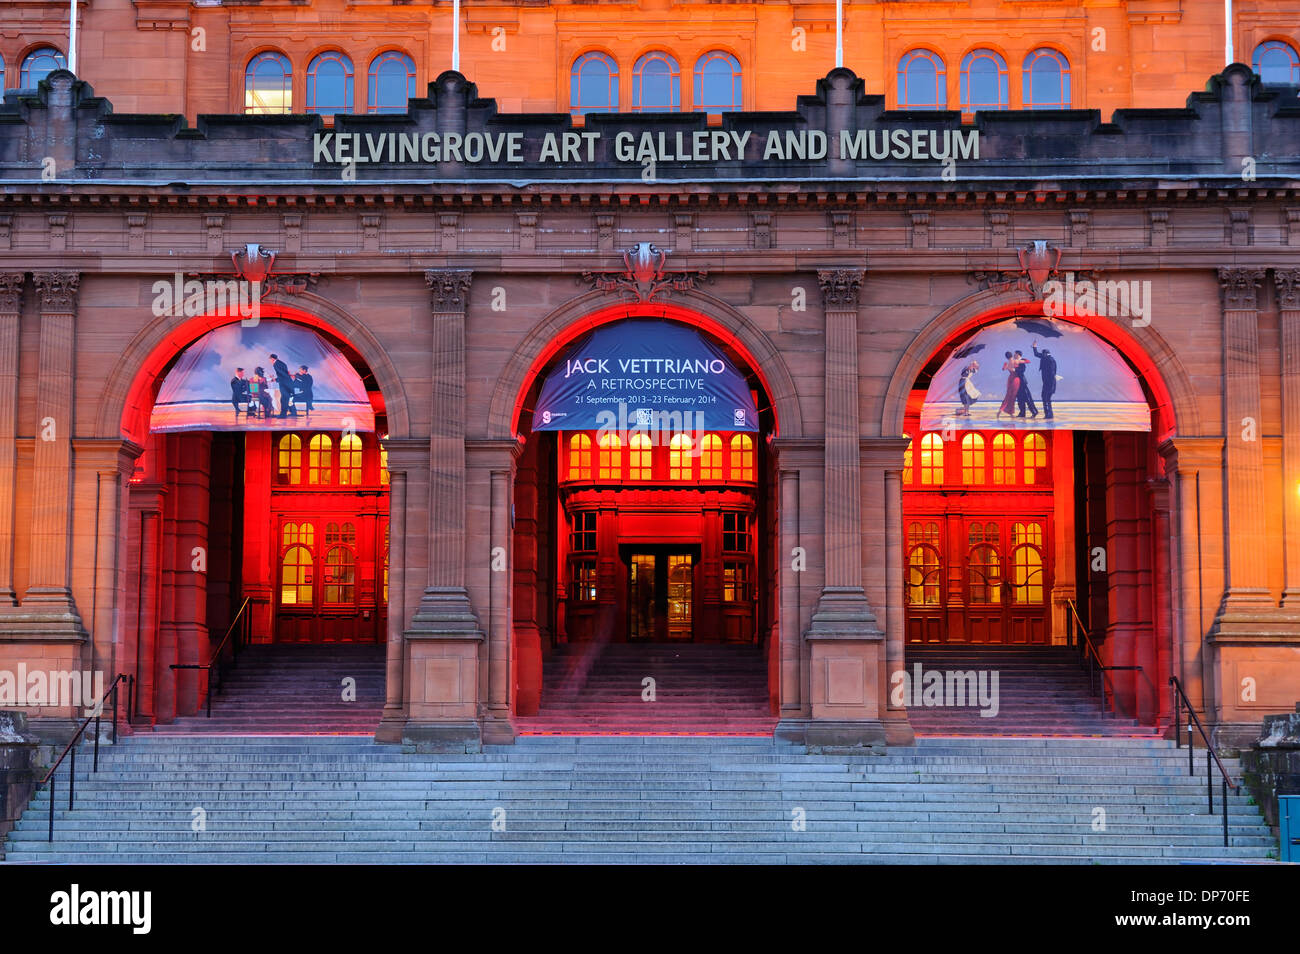 Galería de Arte y Museo Kelvingrove al anochecer, Glasgow, Escocia Foto de stock